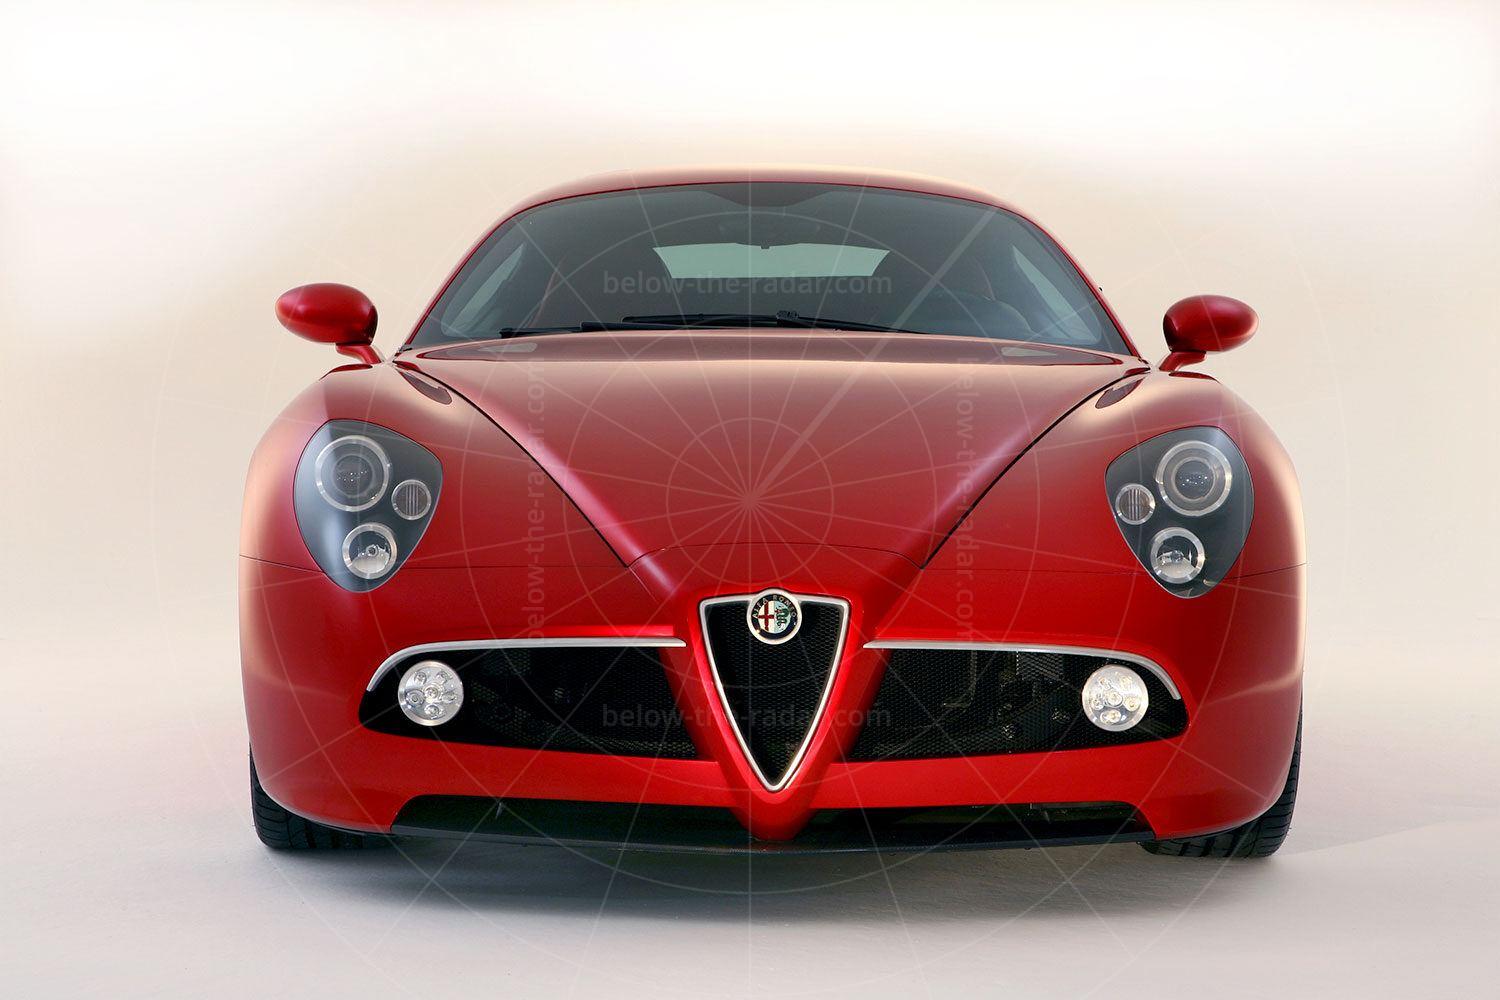 Alfa Romeo 8C Competizione production car Pic: Alfa Romeo | Alfa Romeo 8C Competizione production car